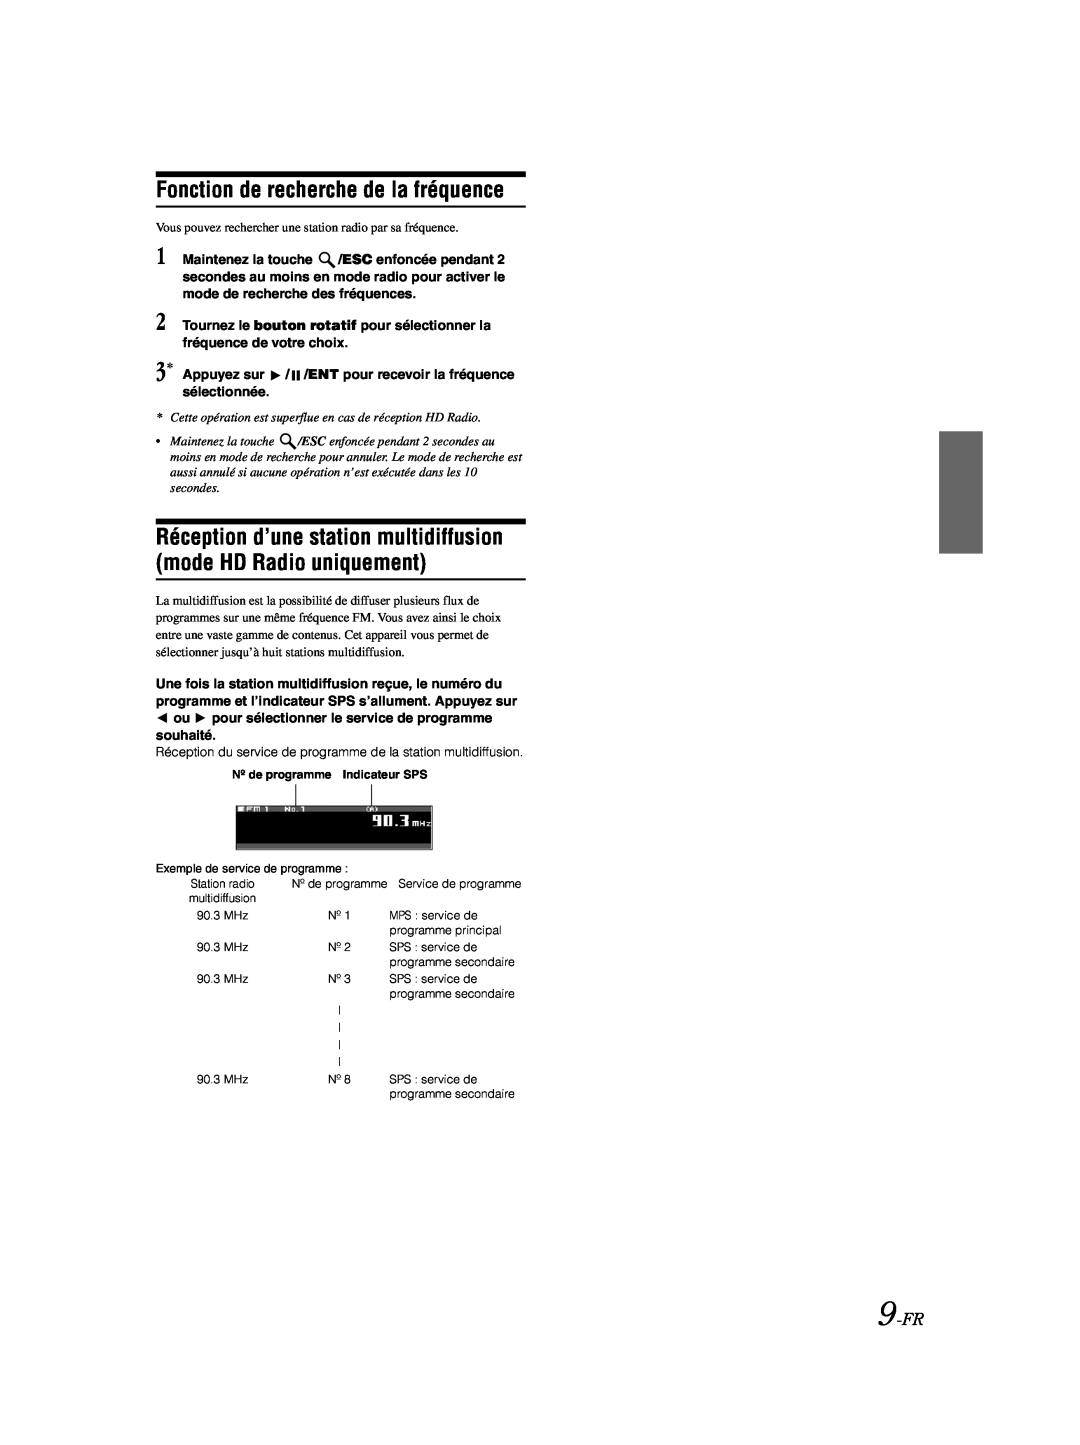 Alpine CDA-9885 owner manual Fonction de recherche de la fréquence, 9-FR 